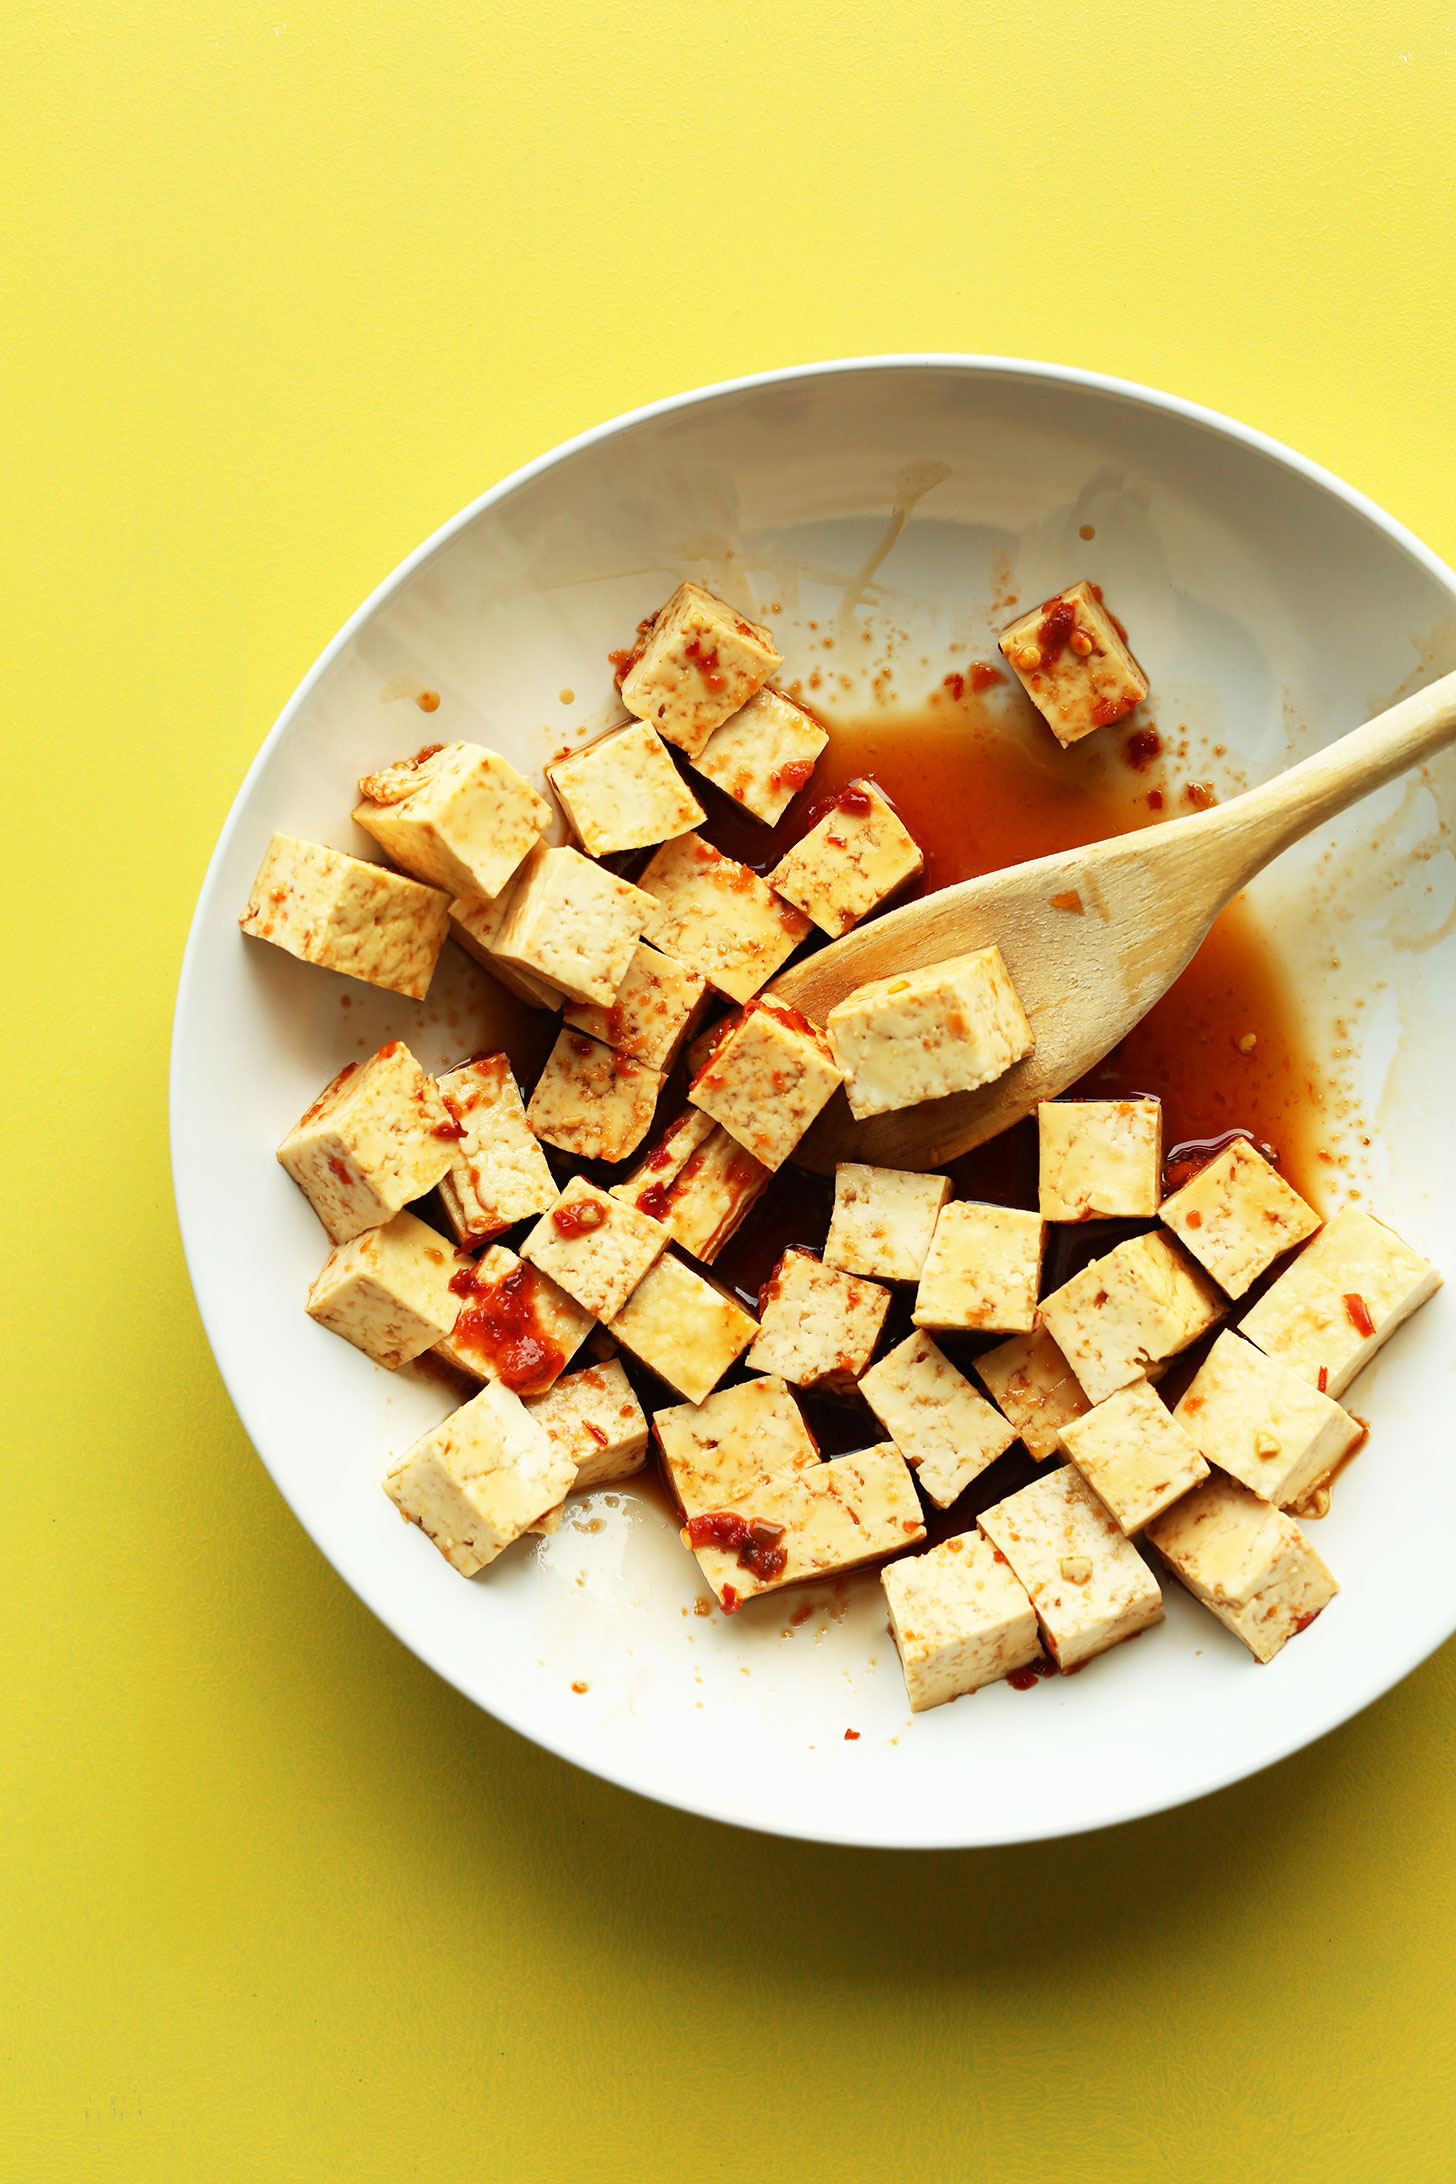 Сыр тофу: польза и вред, рецепты блюд, состав, отзывы